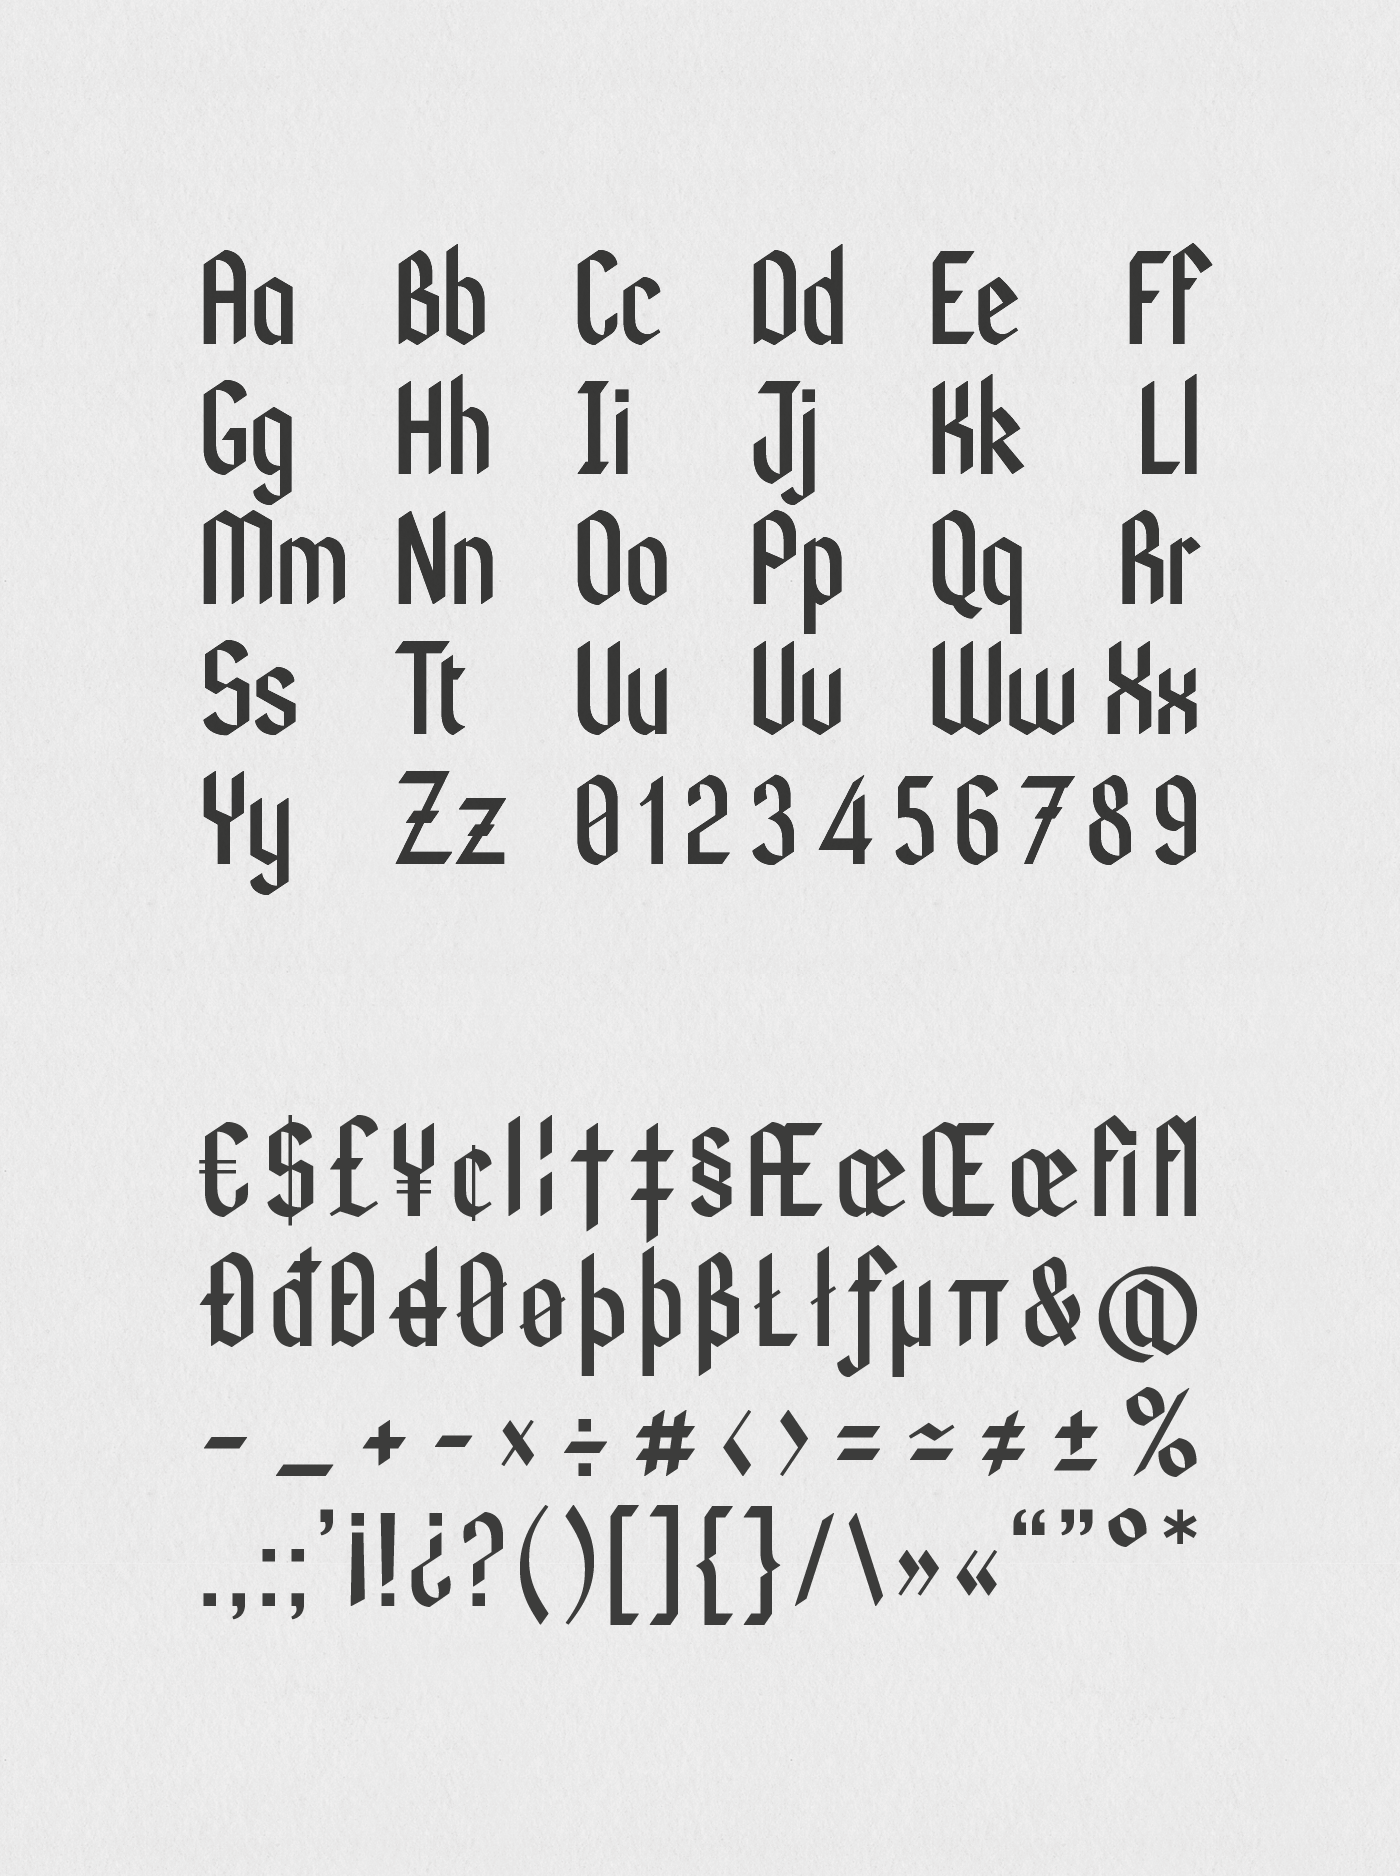 Kodex Font